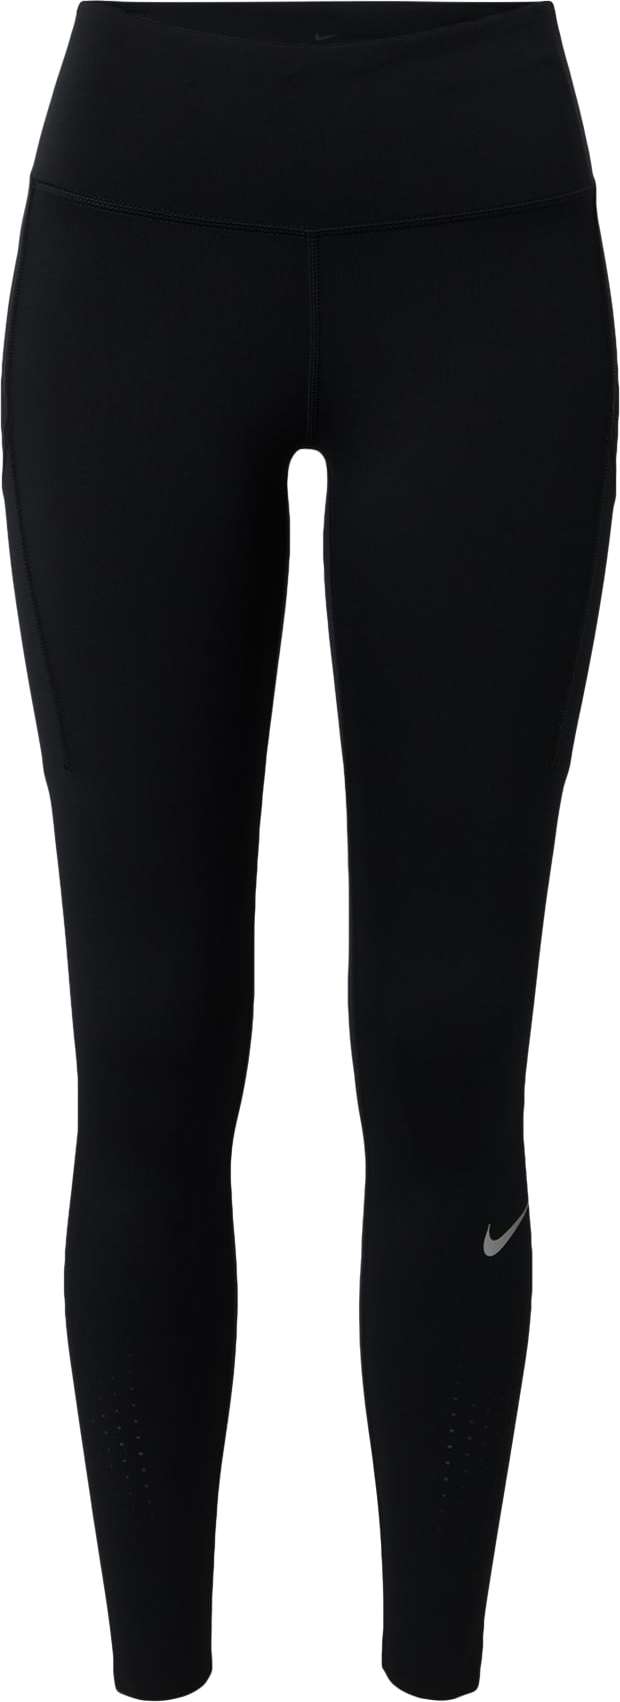 Sportovní kalhoty 'Epic Luxe' Nike šedá / černá